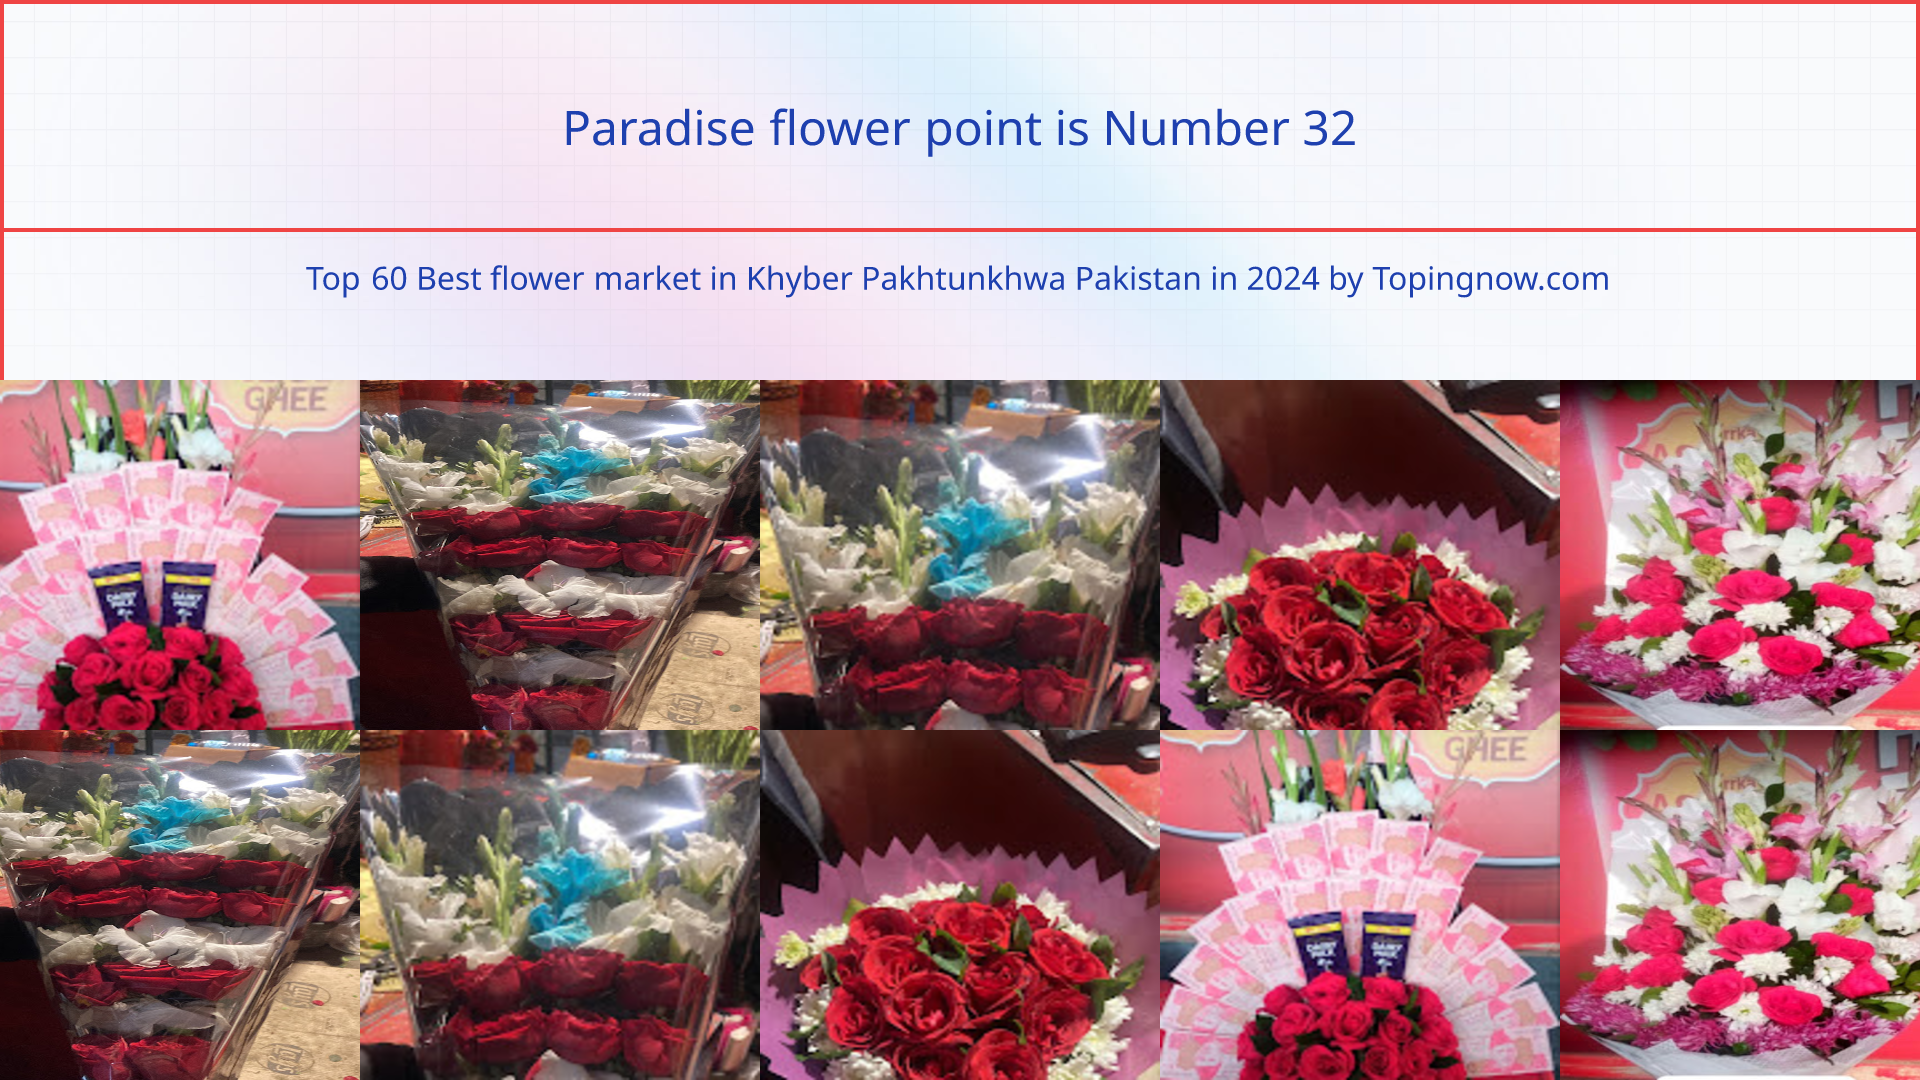 Paradise flower point: Top 60 Best flower market in Khyber Pakhtunkhwa Pakistan in 2024